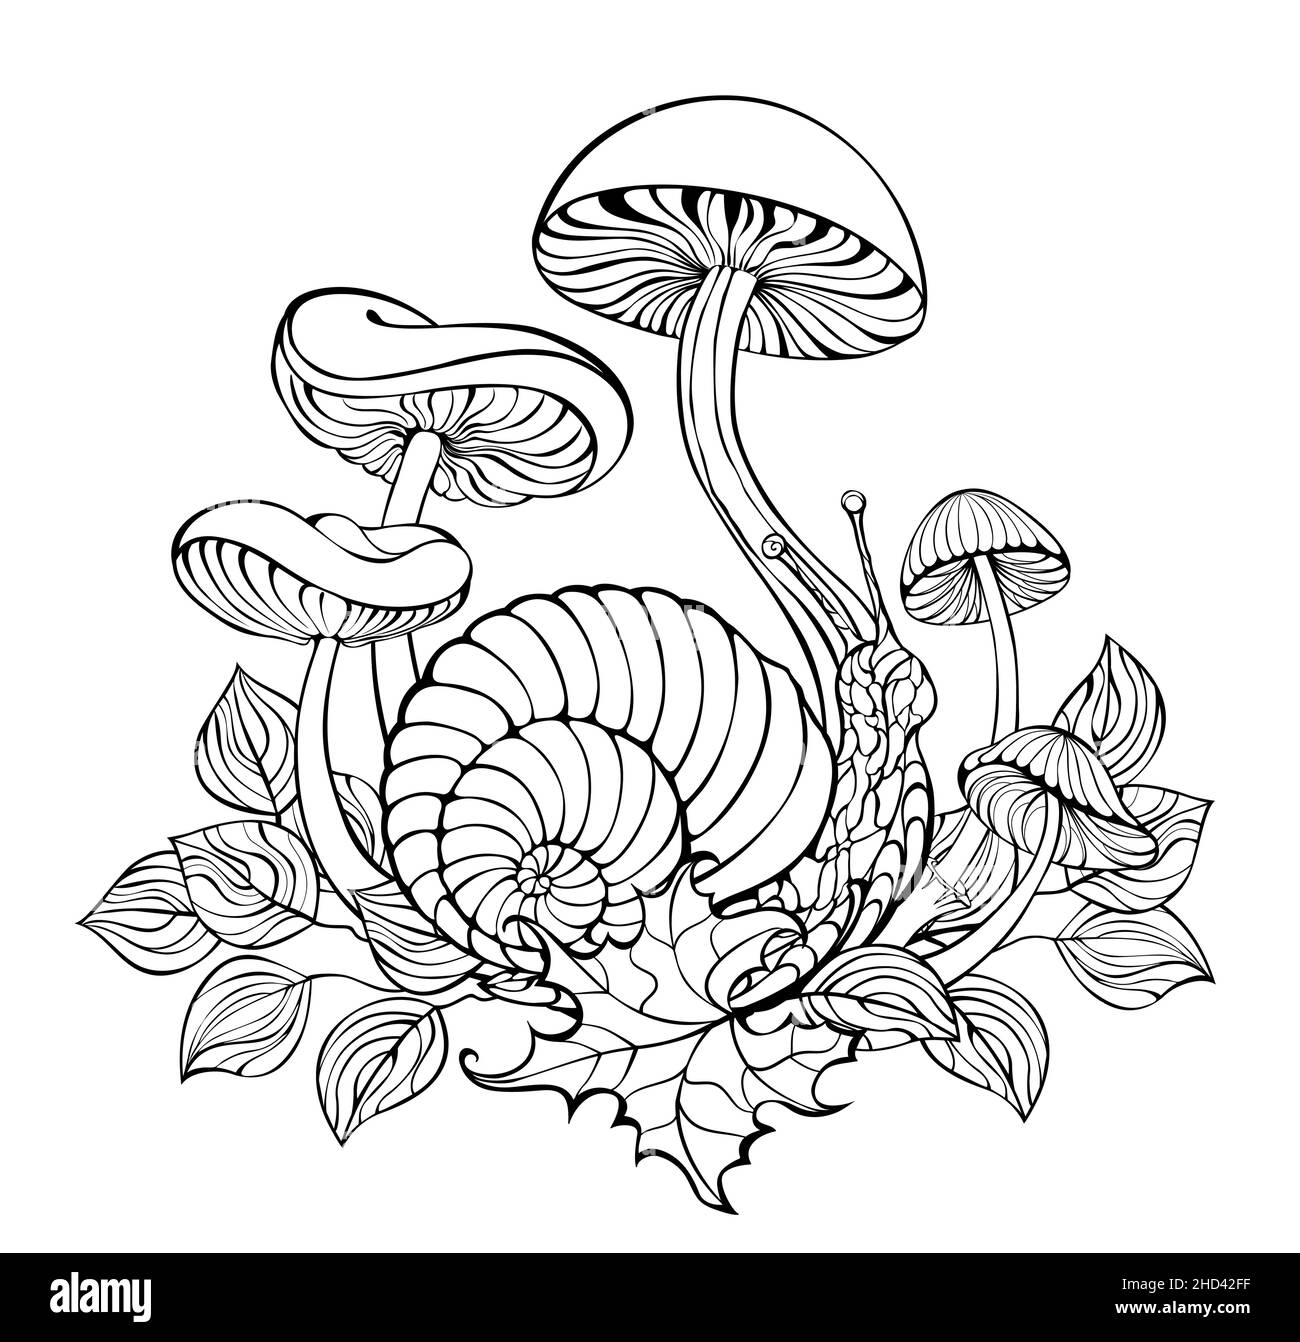 Escargot de contour rampant parmi les grands champignons forestiers et les feuilles d'automne sur fond blanc.Coloriage.Dessin de contour. Illustration de Vecteur